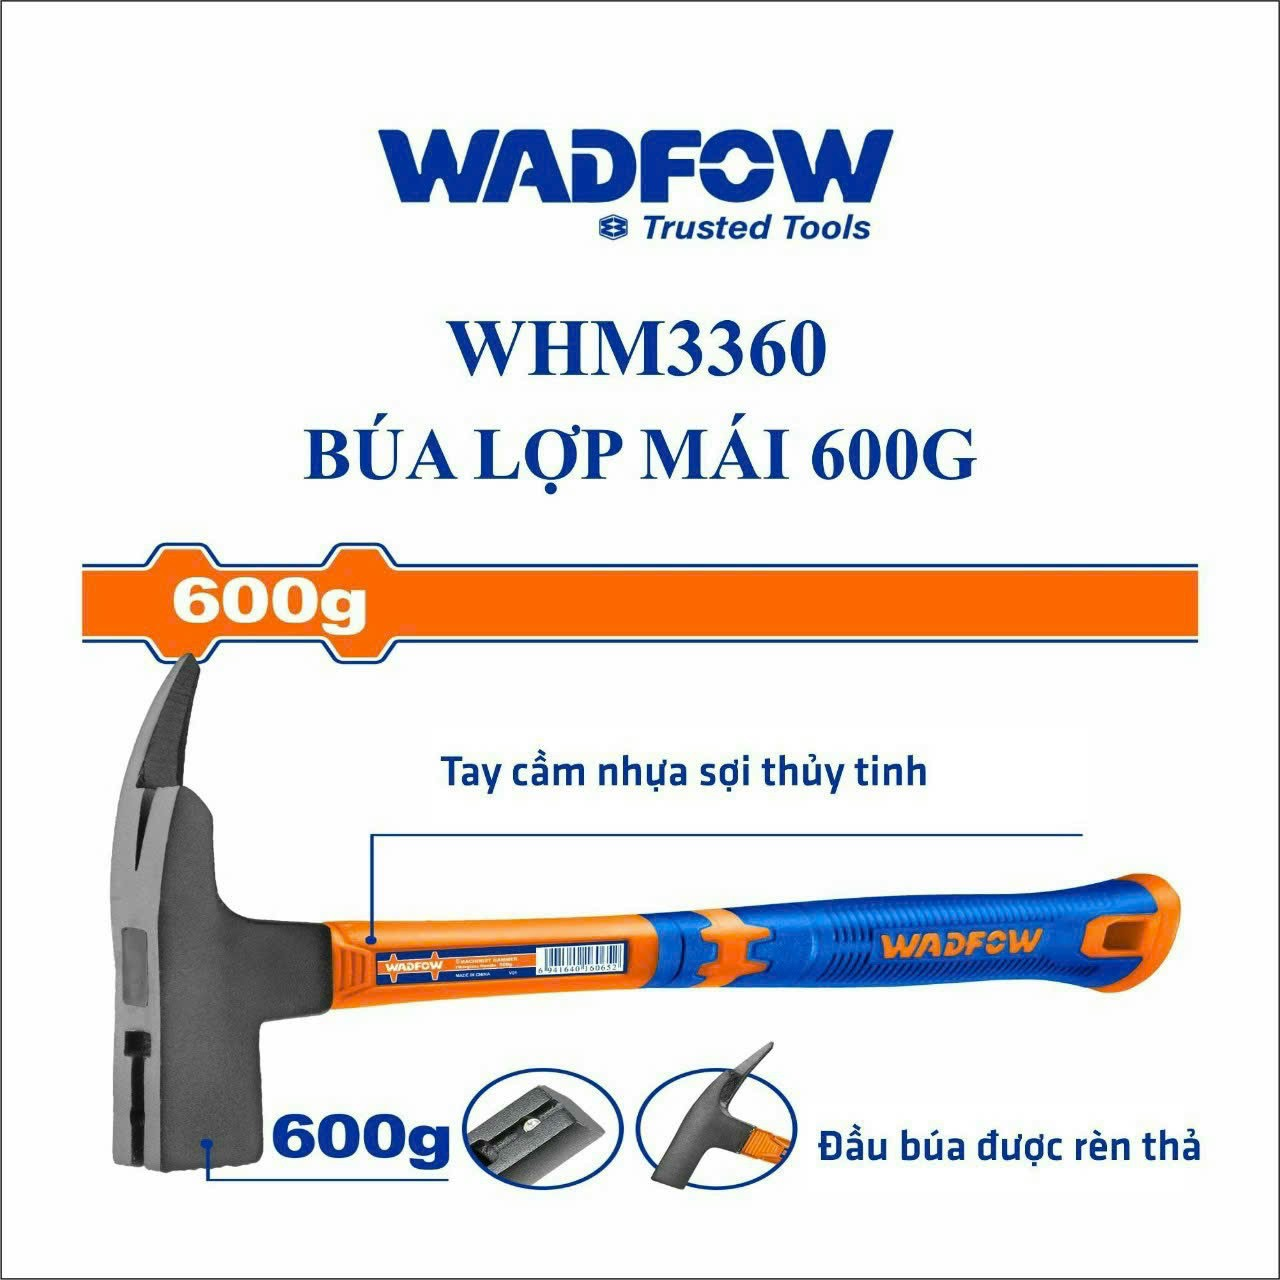 BÚA LỢP MÁI 600G WHM3360 WADFOW - HÀNG CHÍNH HÃNG